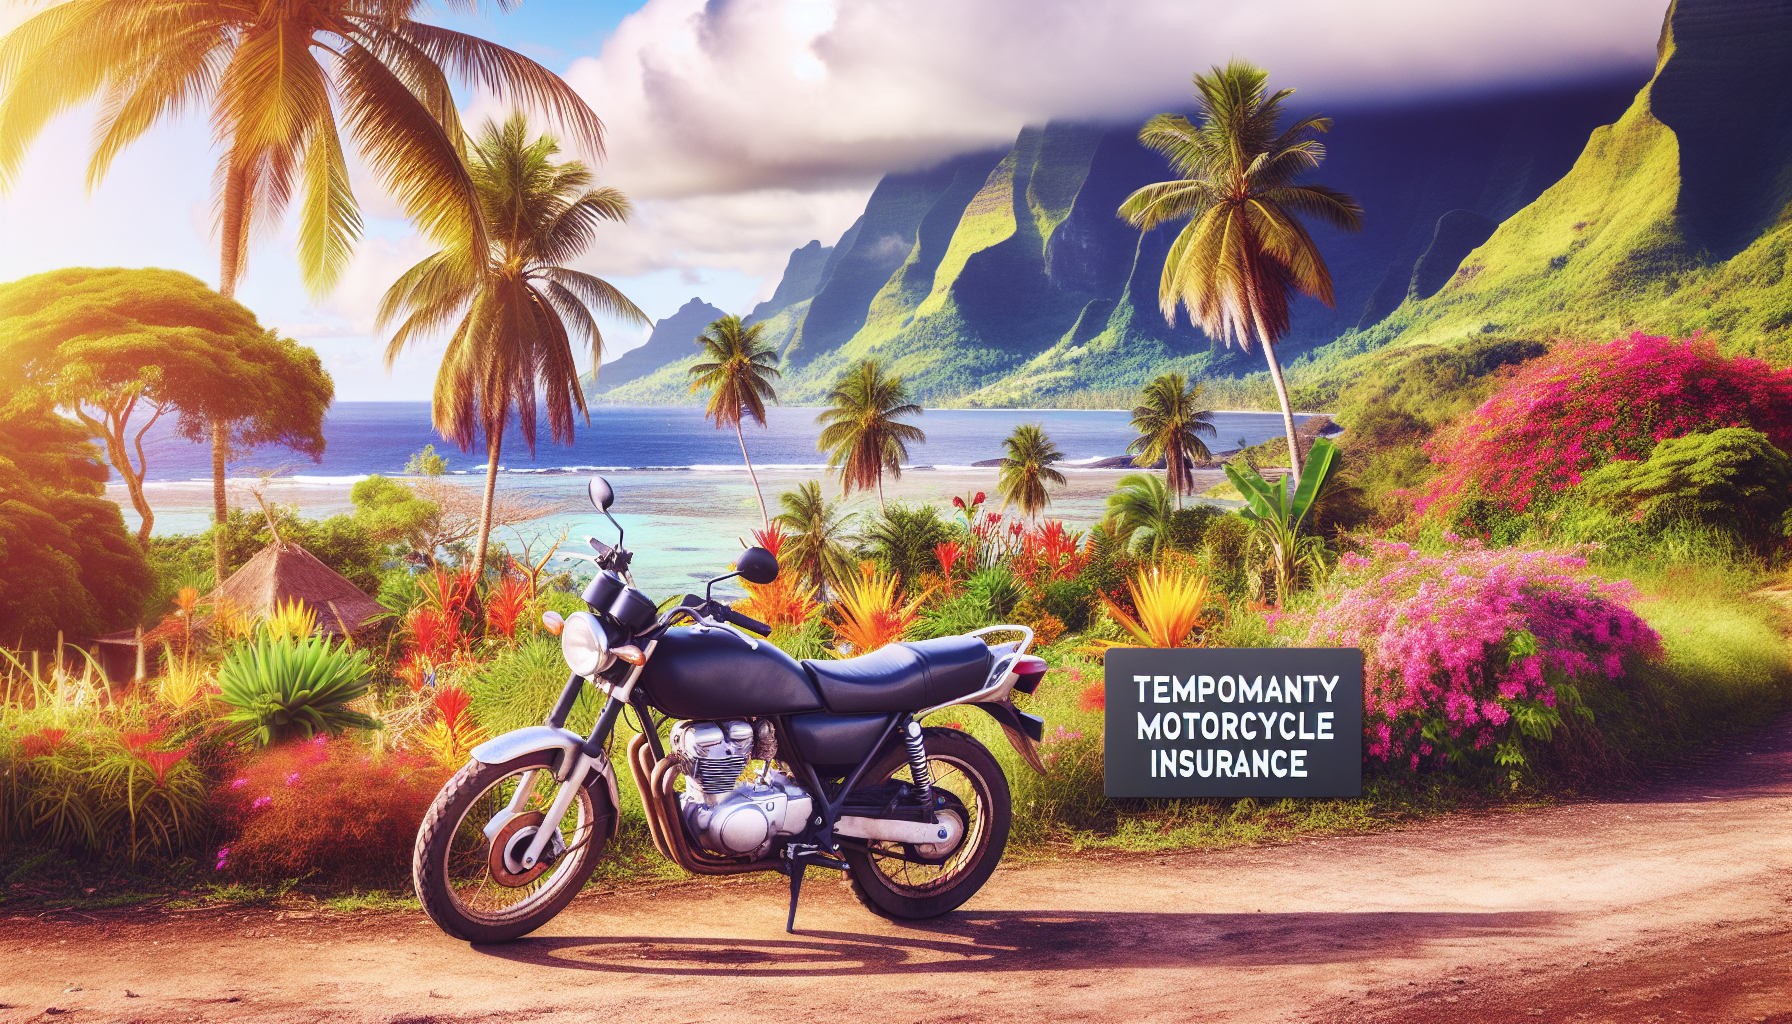 assurance moto temporaire à la réunion : trouvez la meilleure assurance moto à la réunion pour assurer votre véhicule temporairement avec des garanties adaptées.